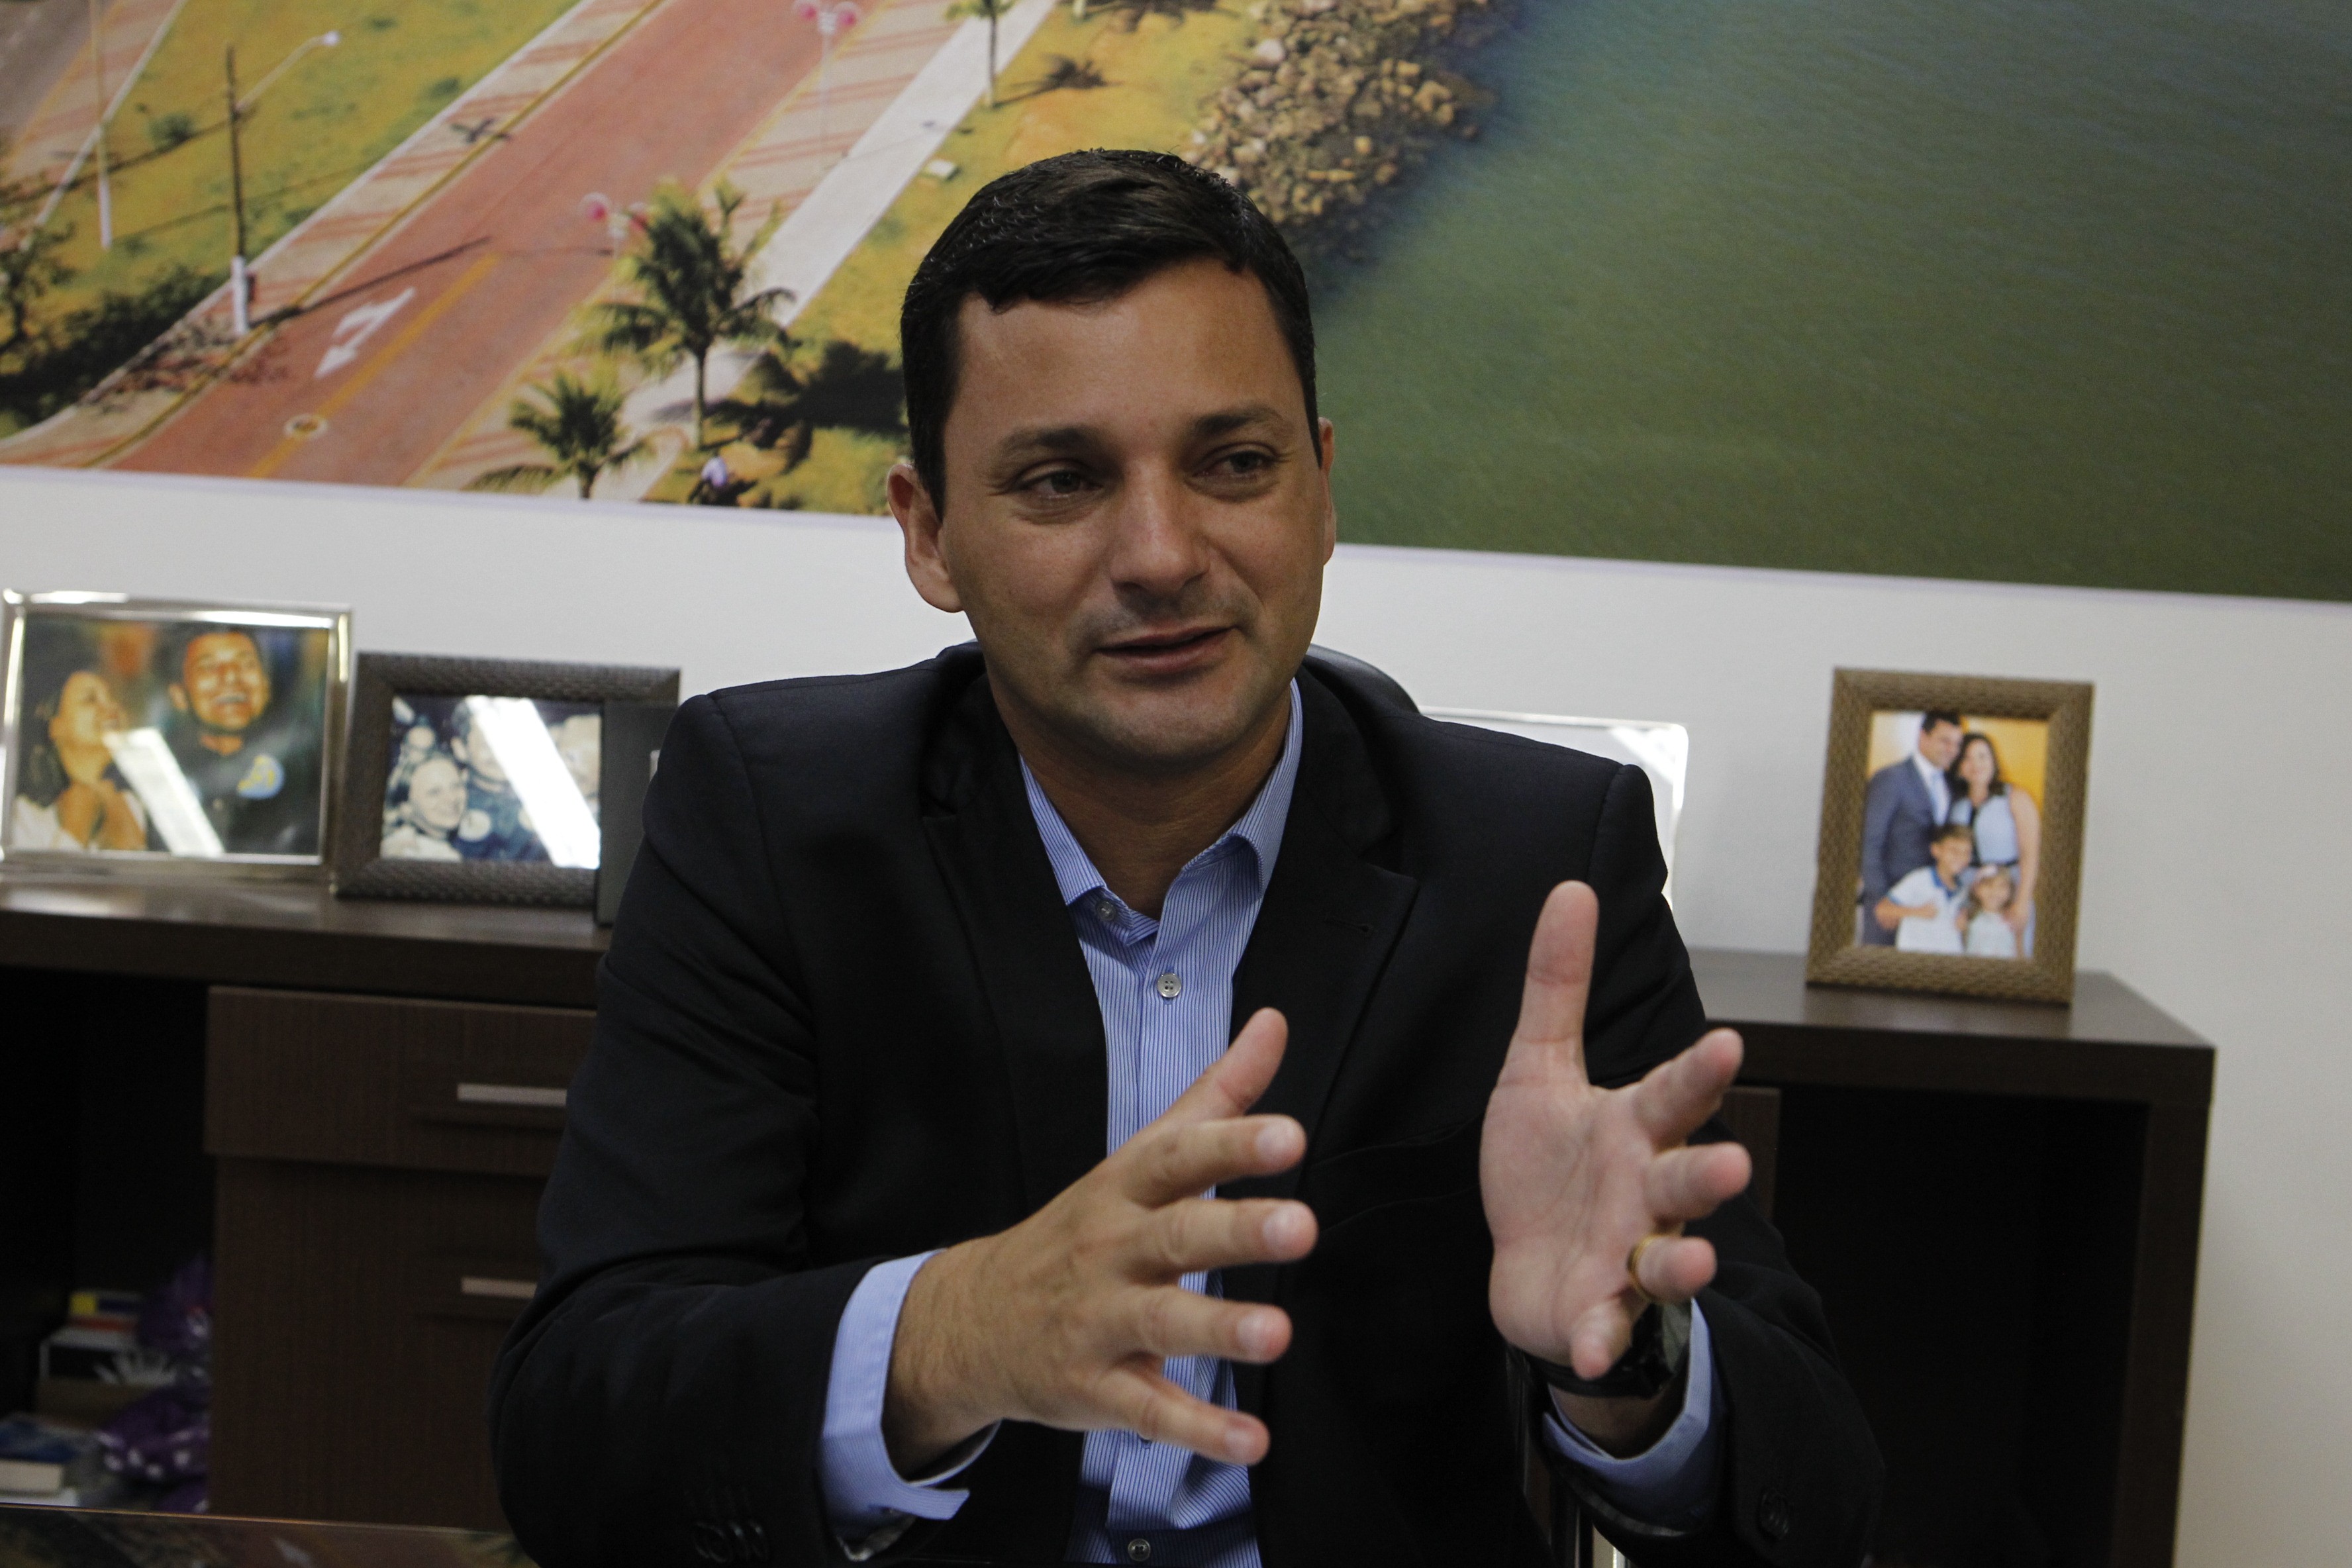 Justiça condena ex-prefeito de Itanhaém, SP, a 10 anos de prisão por participar de esquema de corrupção